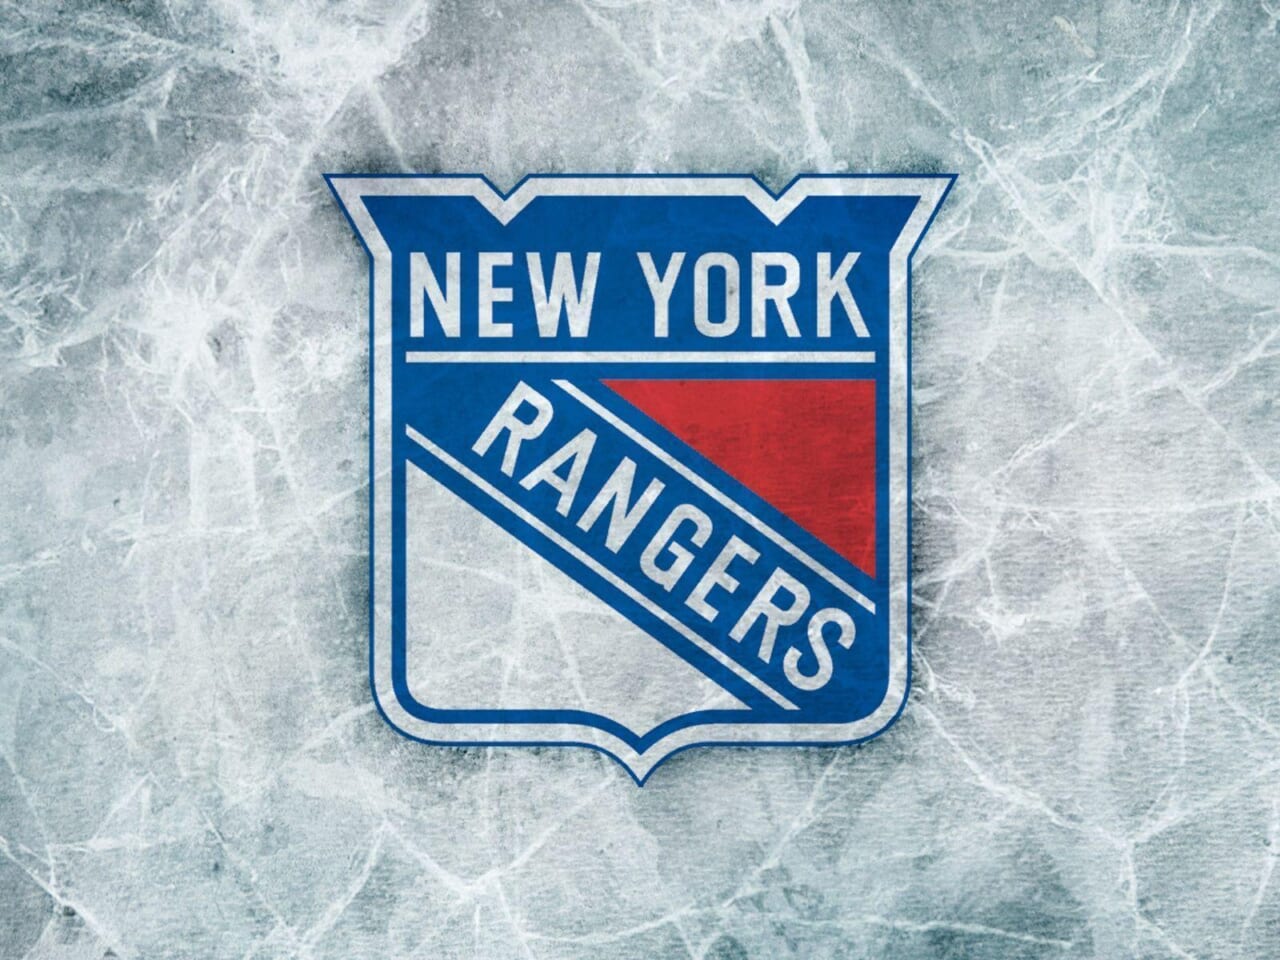 New York Ranger’s ECHL affiliate will not play in 2020-21